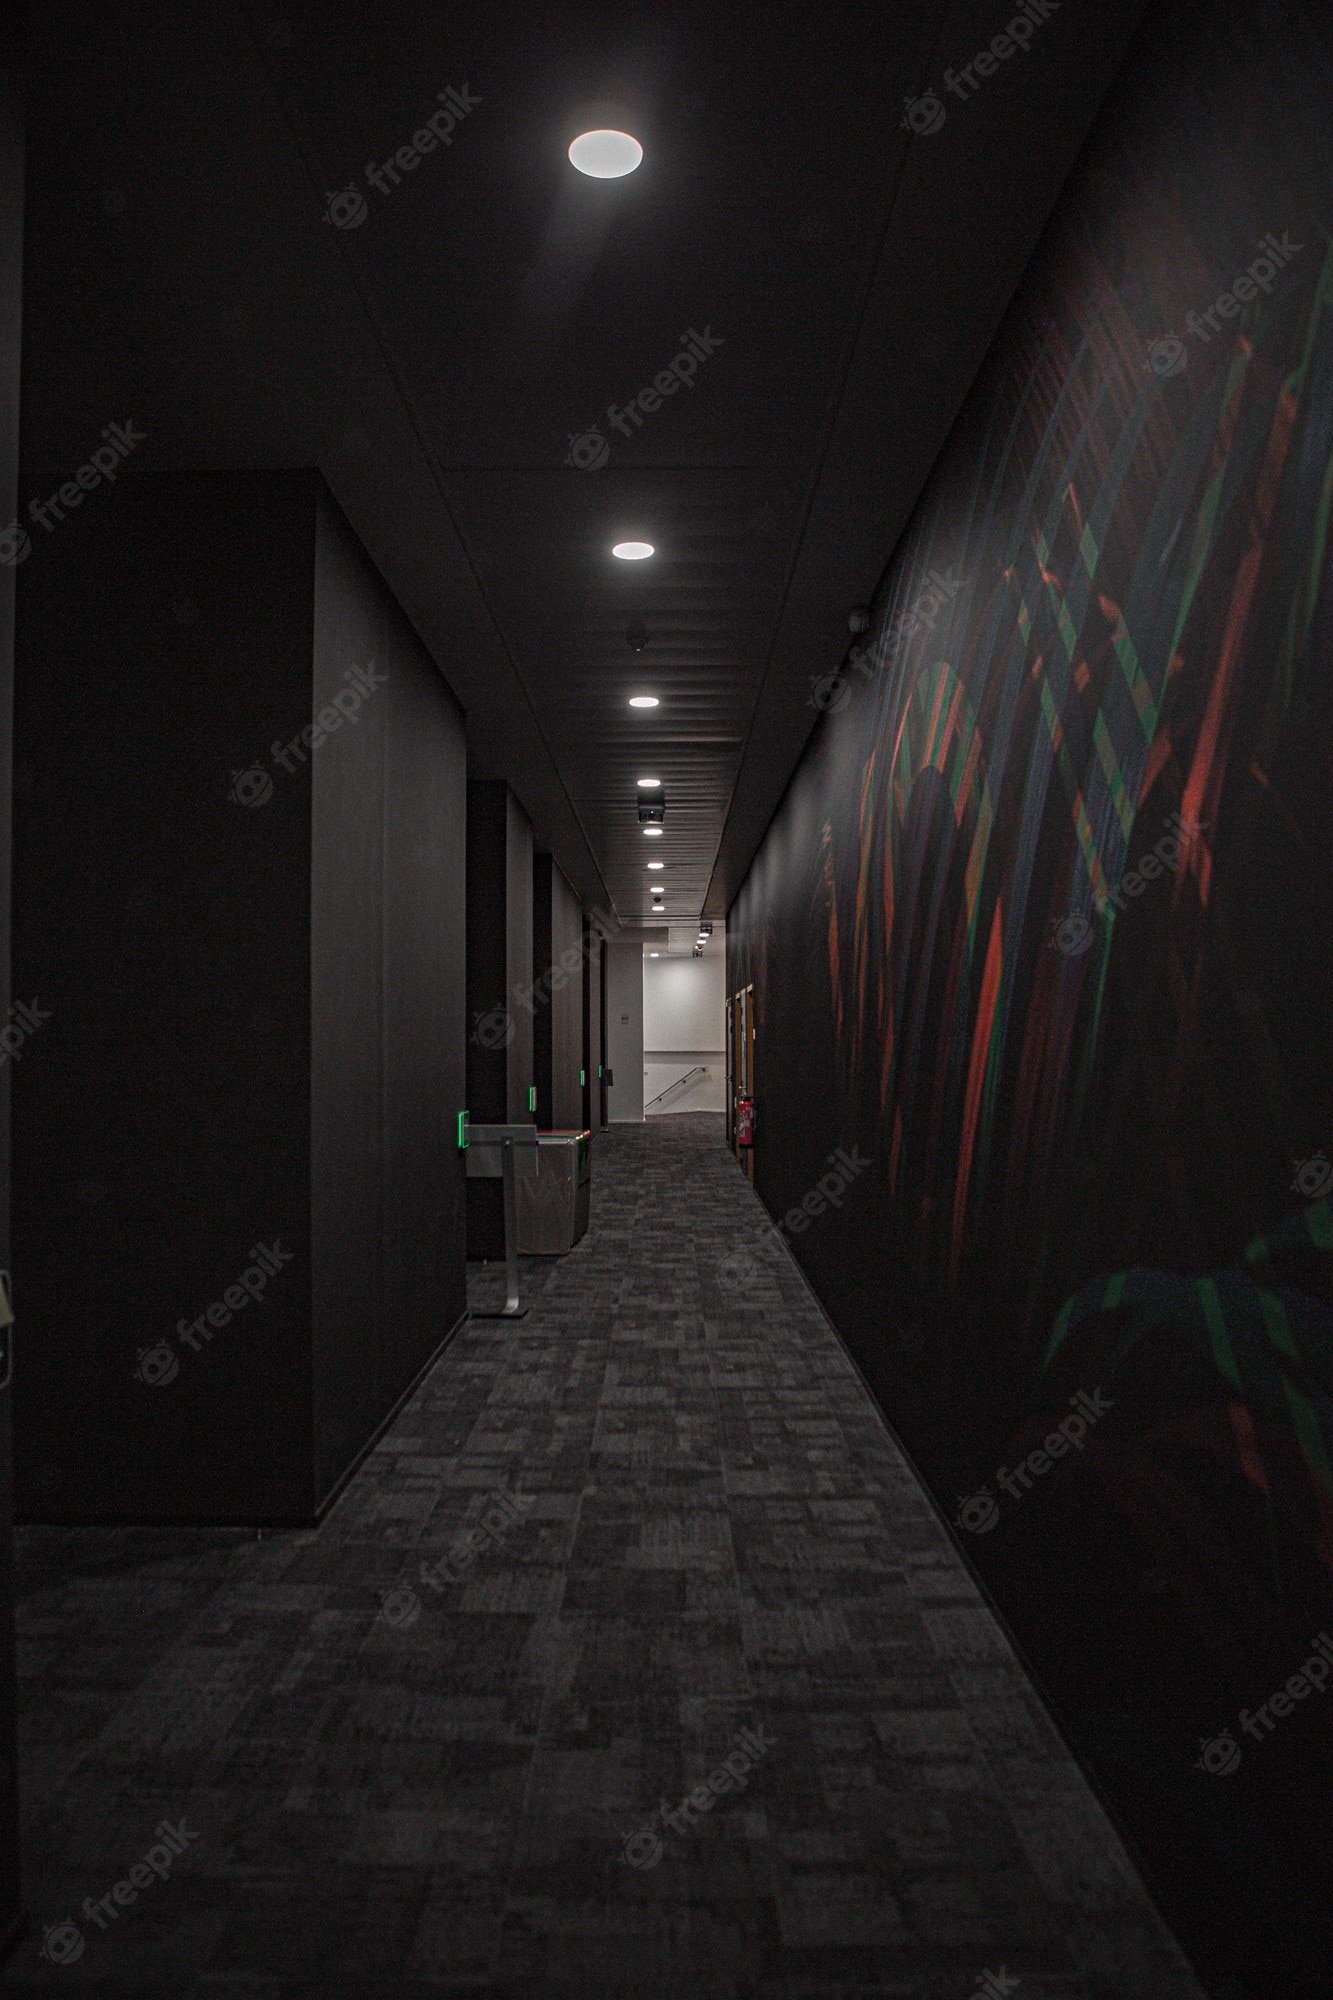 Dark Hallway Background Image